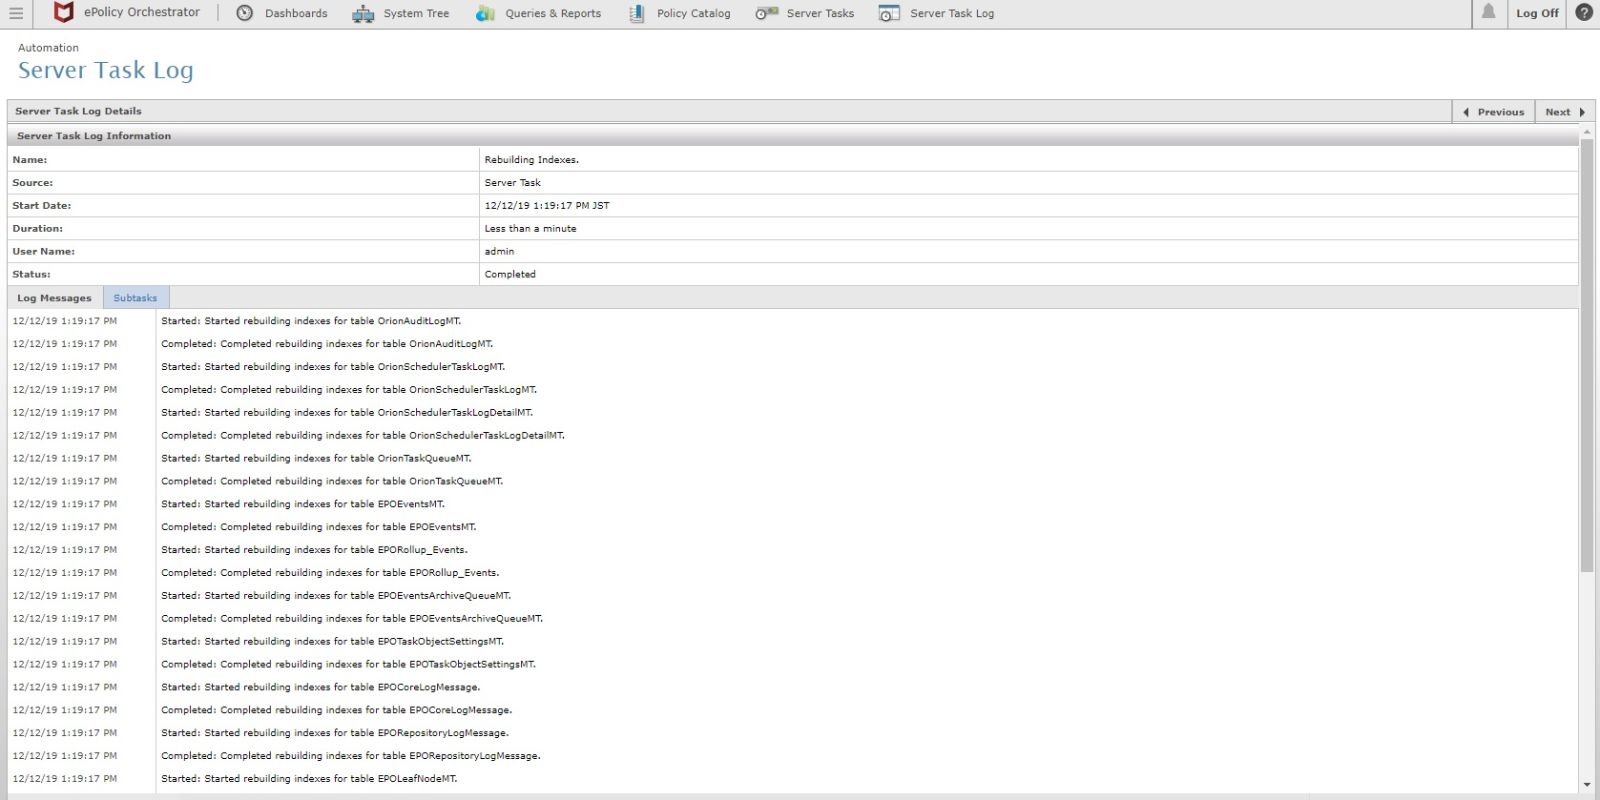 Server Task Log Details page showing completed events